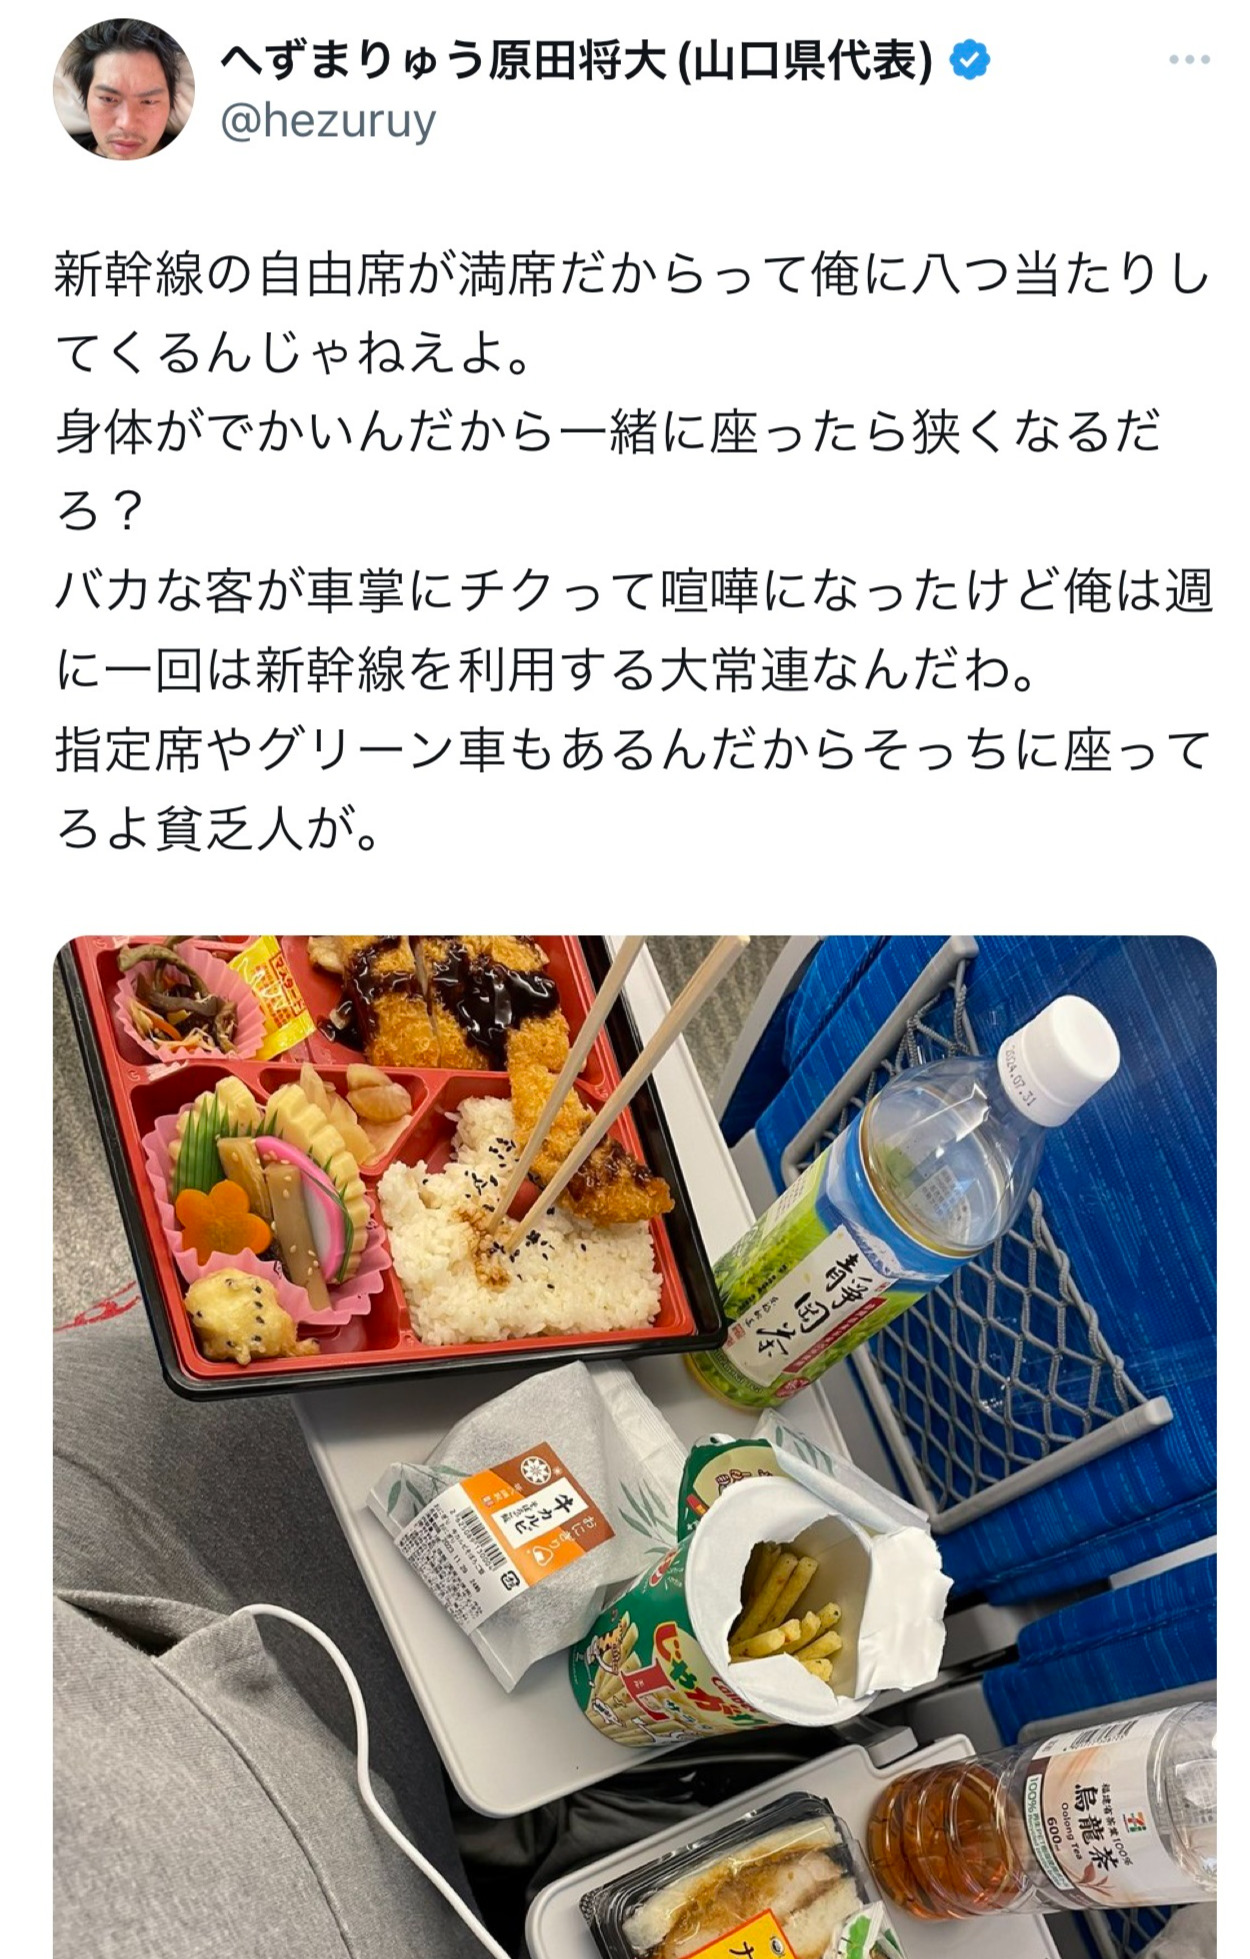 新幹線車内での「ケンカ」についてつづった（へずまりゅうのX（旧Twitter）から）
